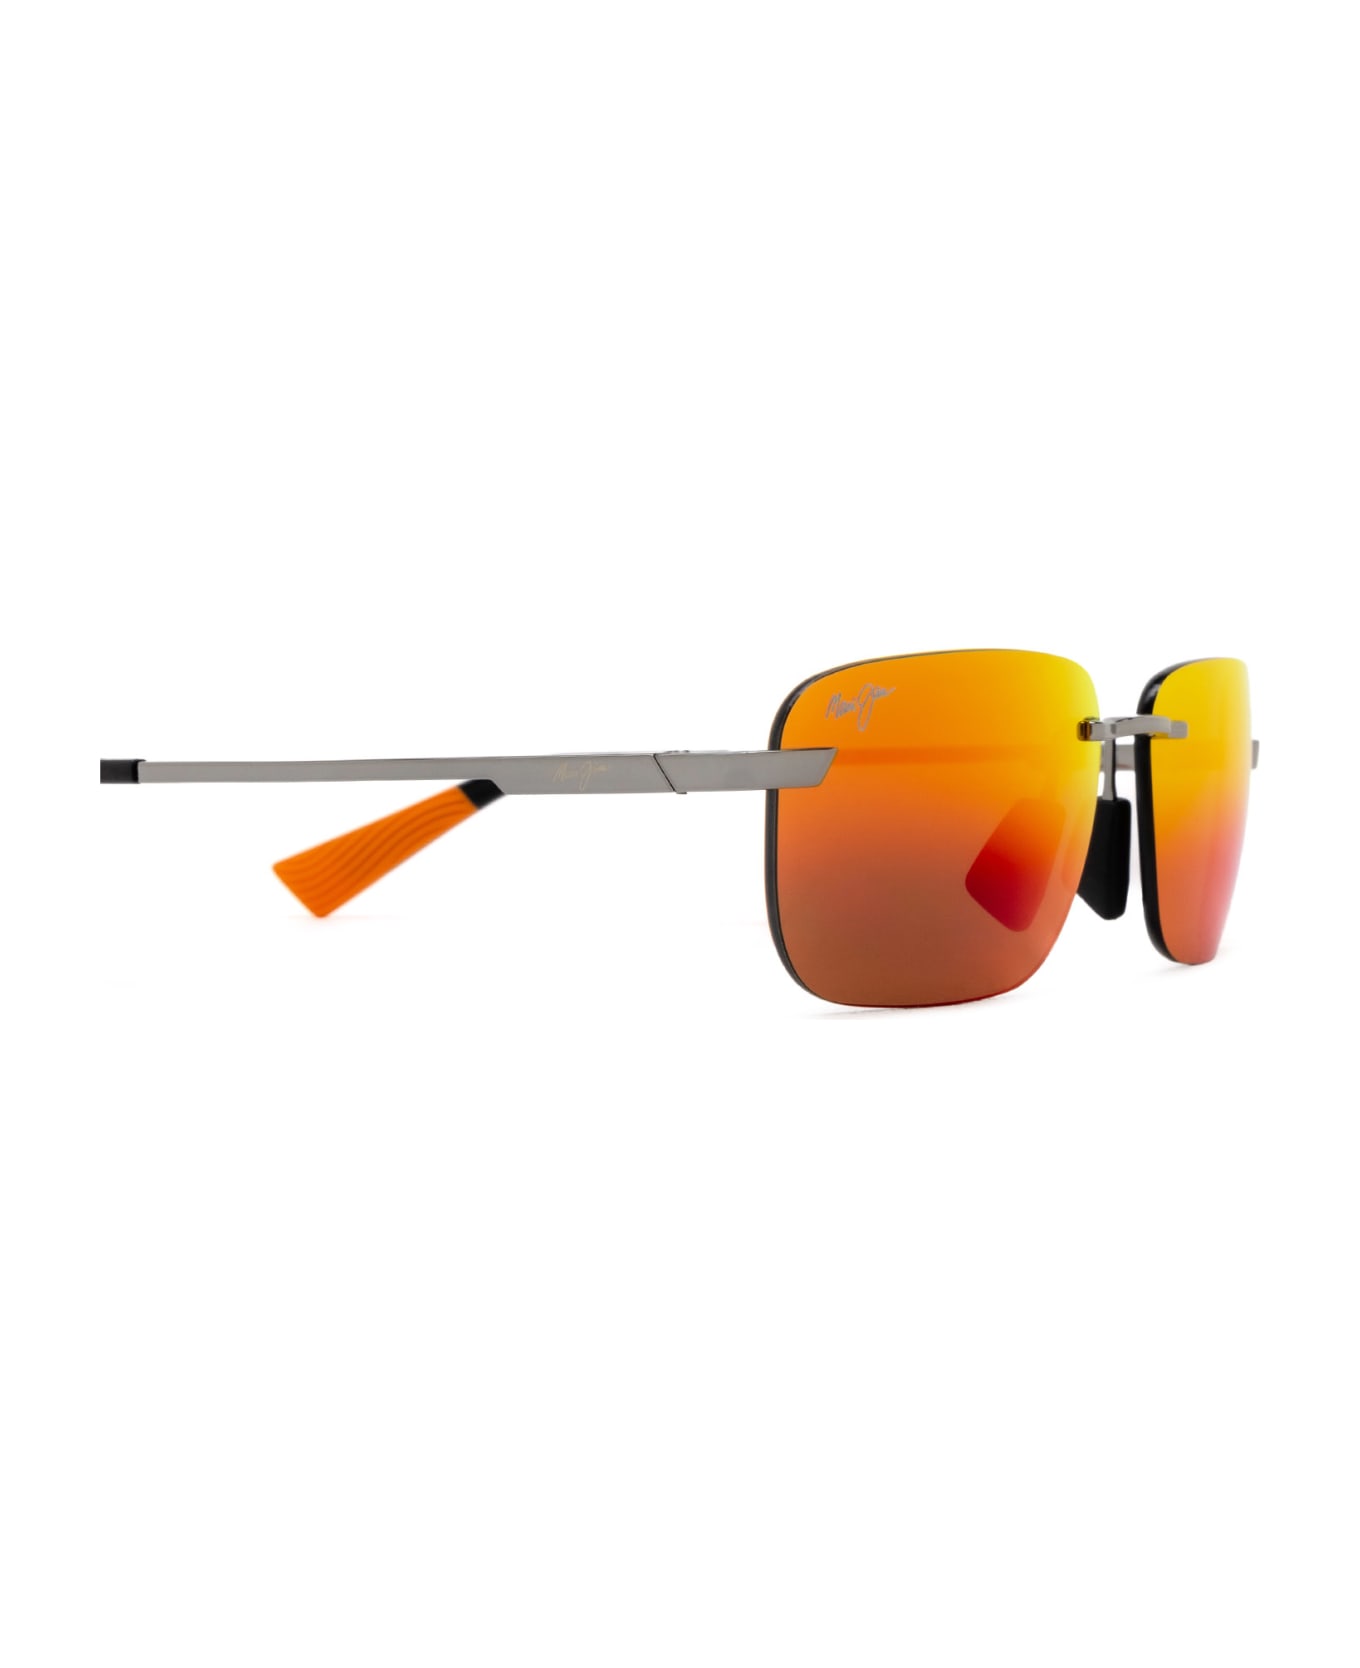 Maui Jim Mj624 Shiny Light Ruthenium Sunglasses - Shiny Light Ruthenium サングラス